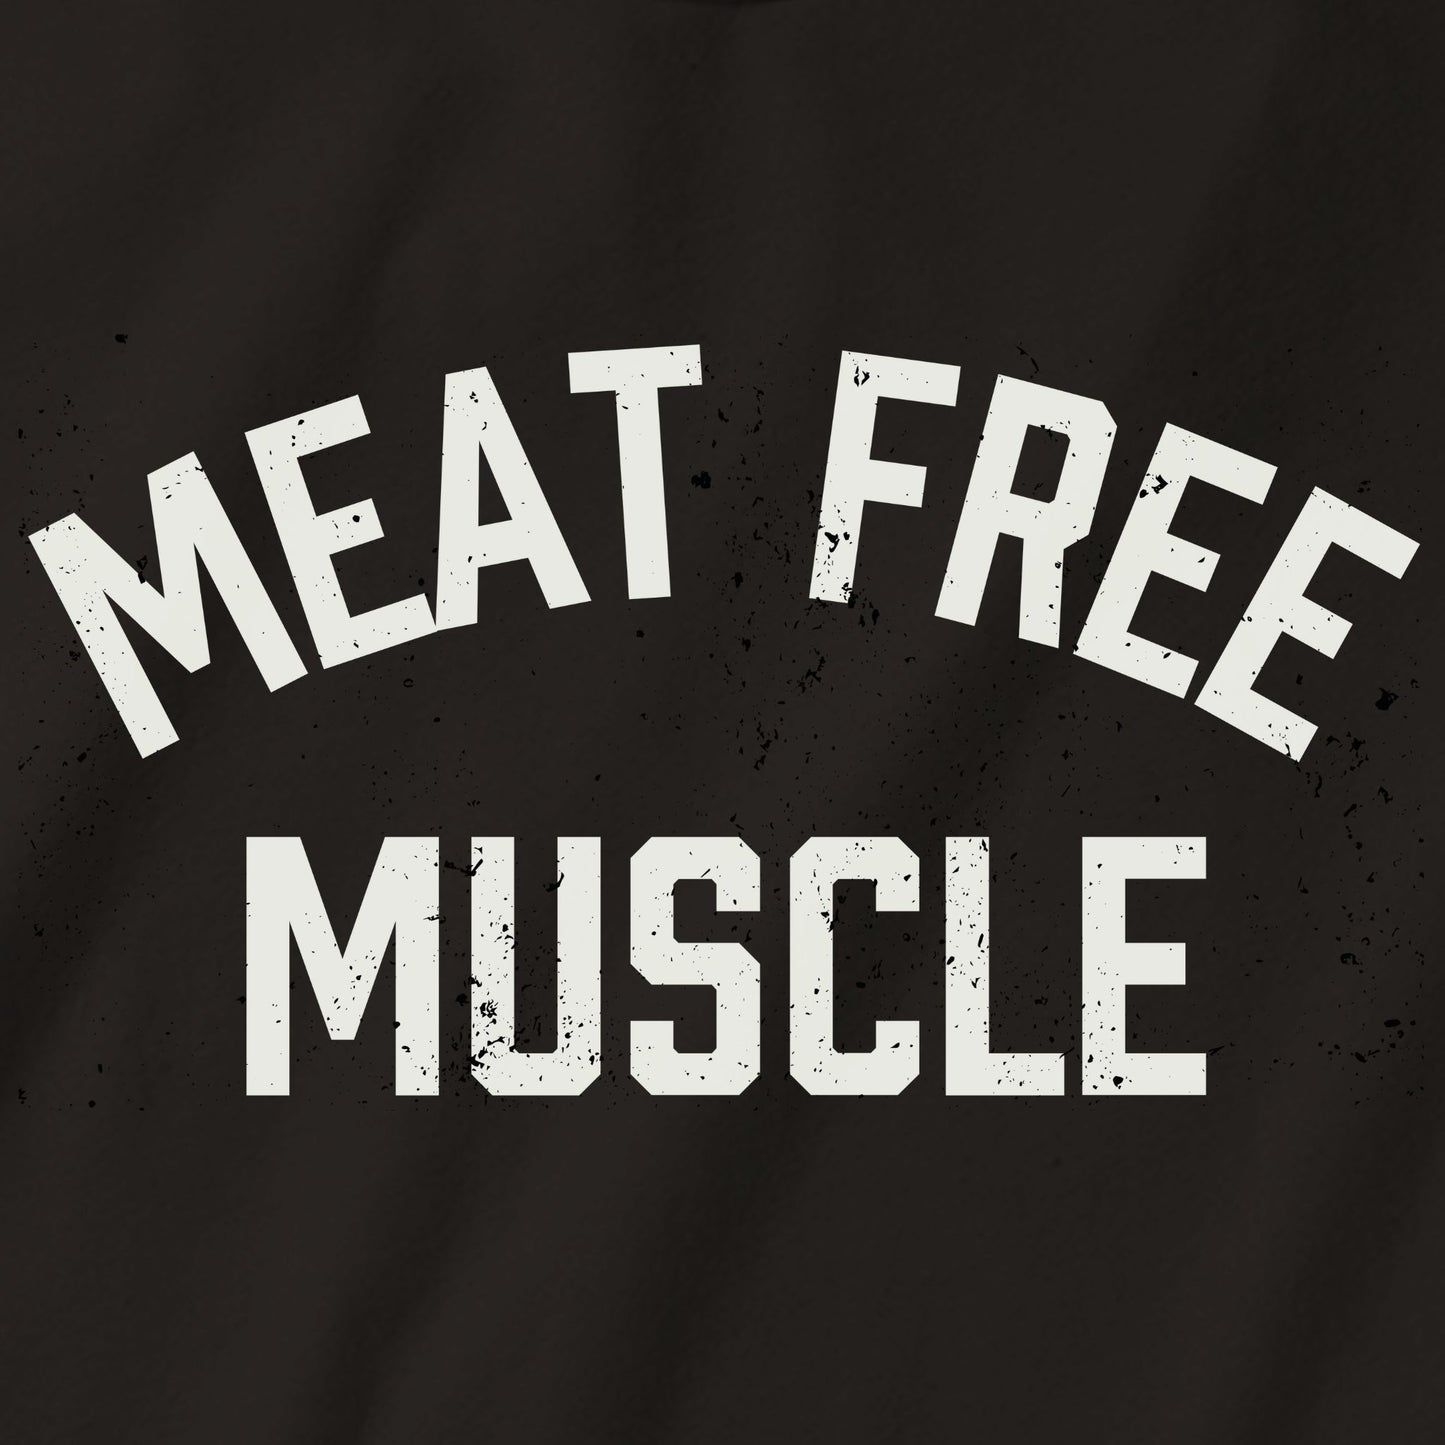 Meat Free Muscle Tank